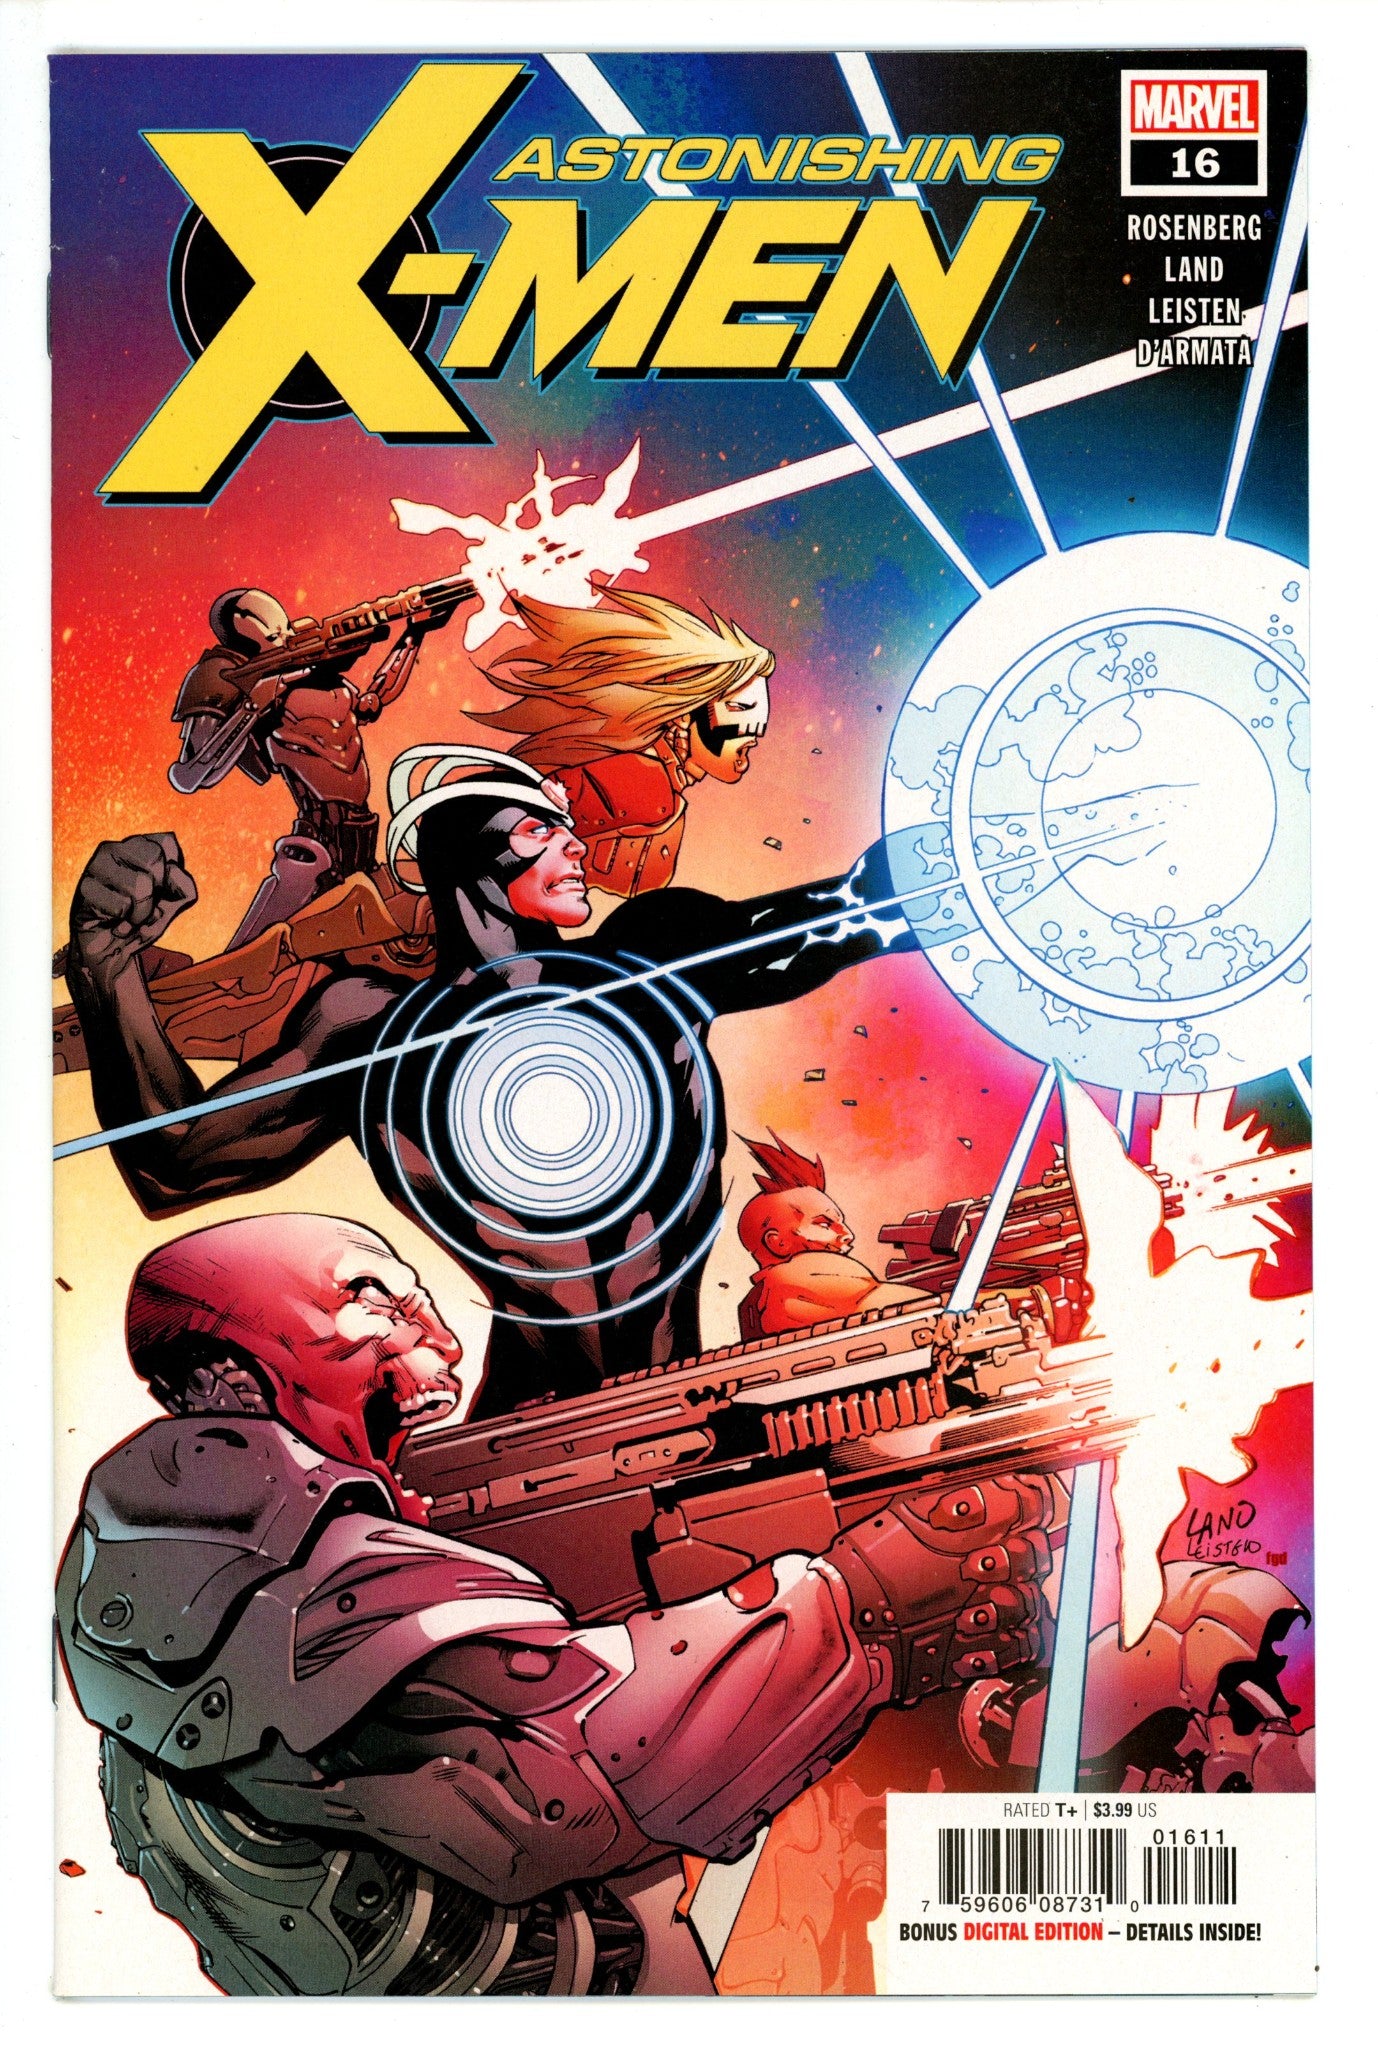 Astonishing X-Men Vol 4 16 High Grade (2018) 